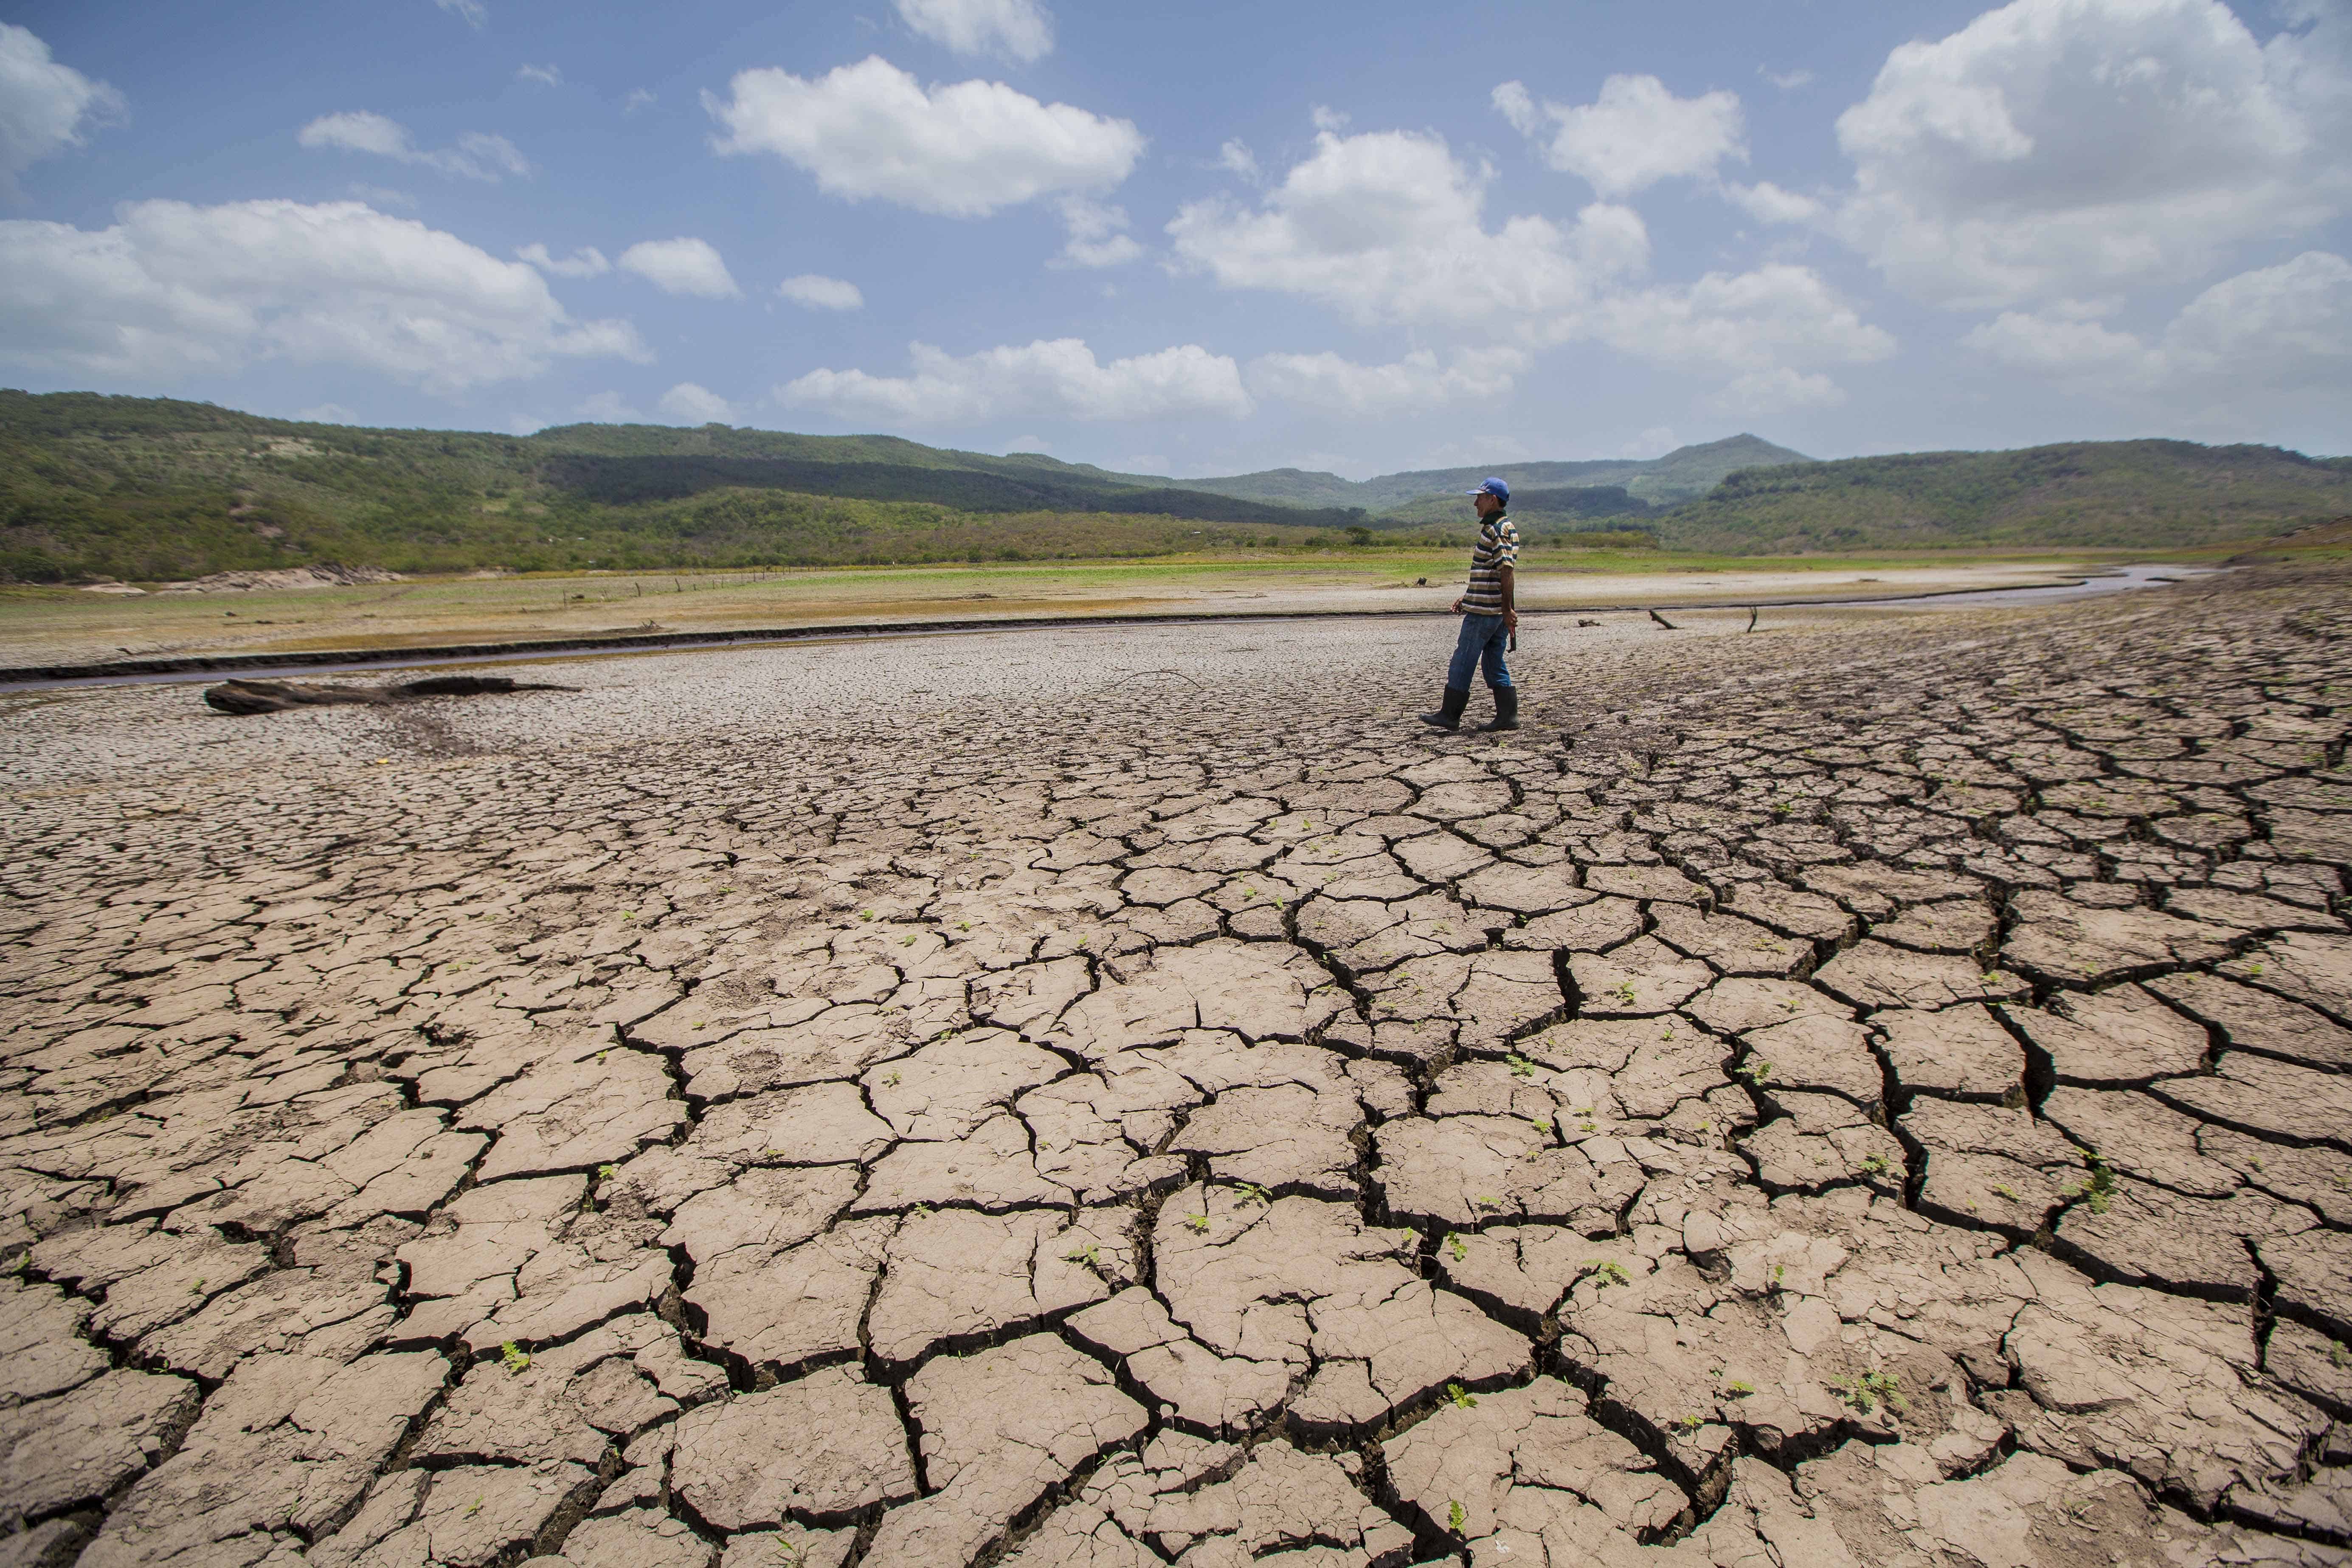 El Nino Drought